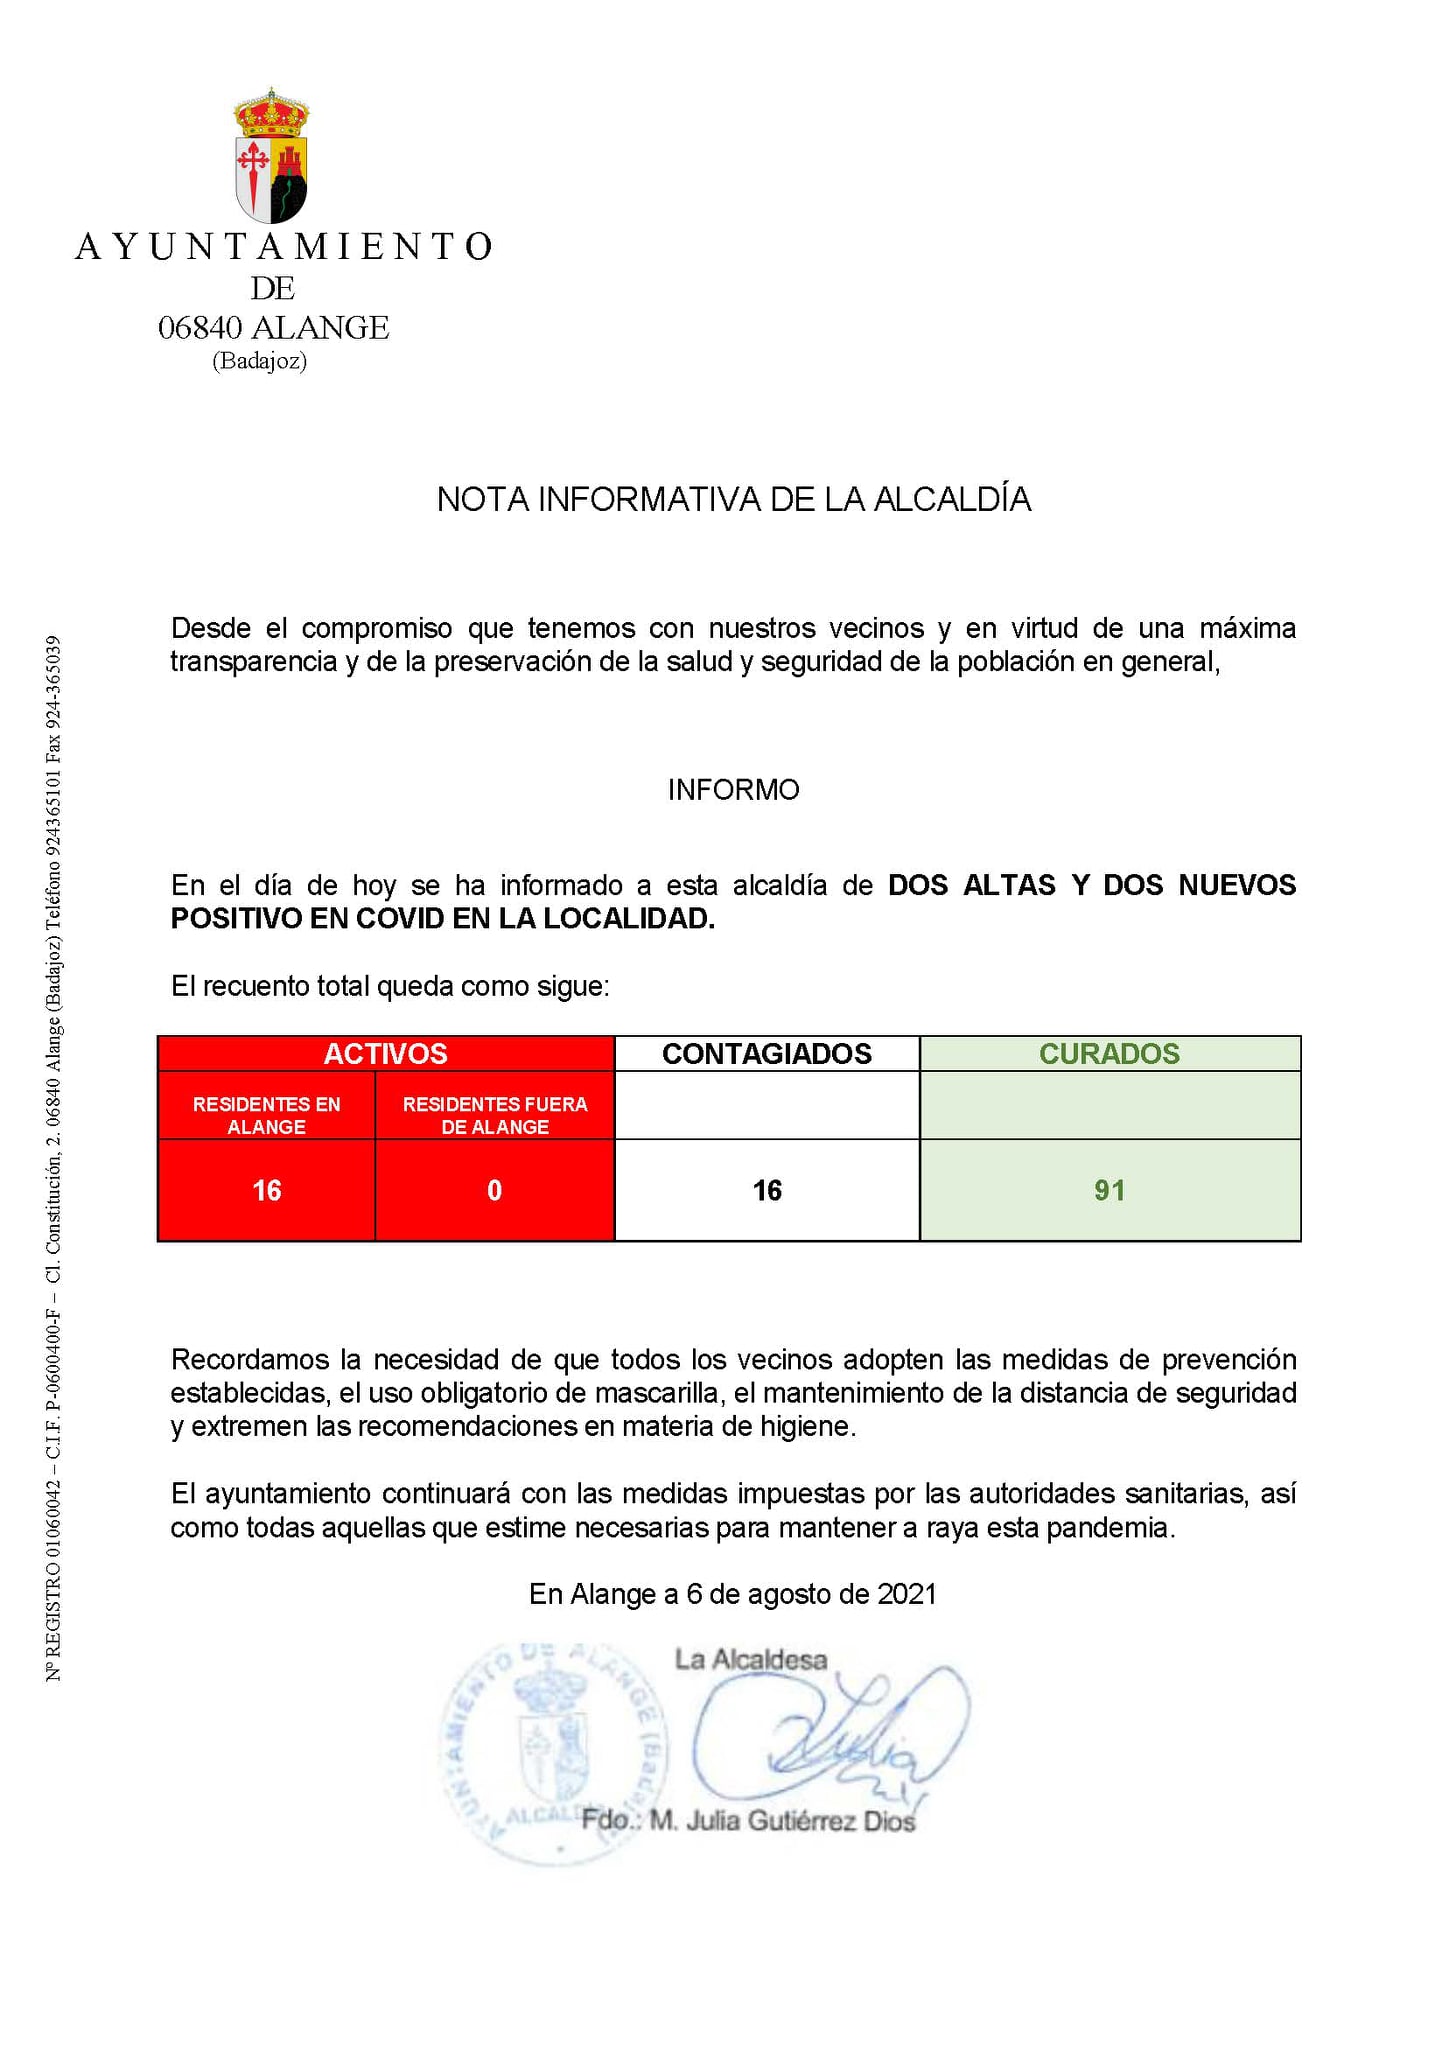 Nota informativa del Ayuntamiento de Alange.